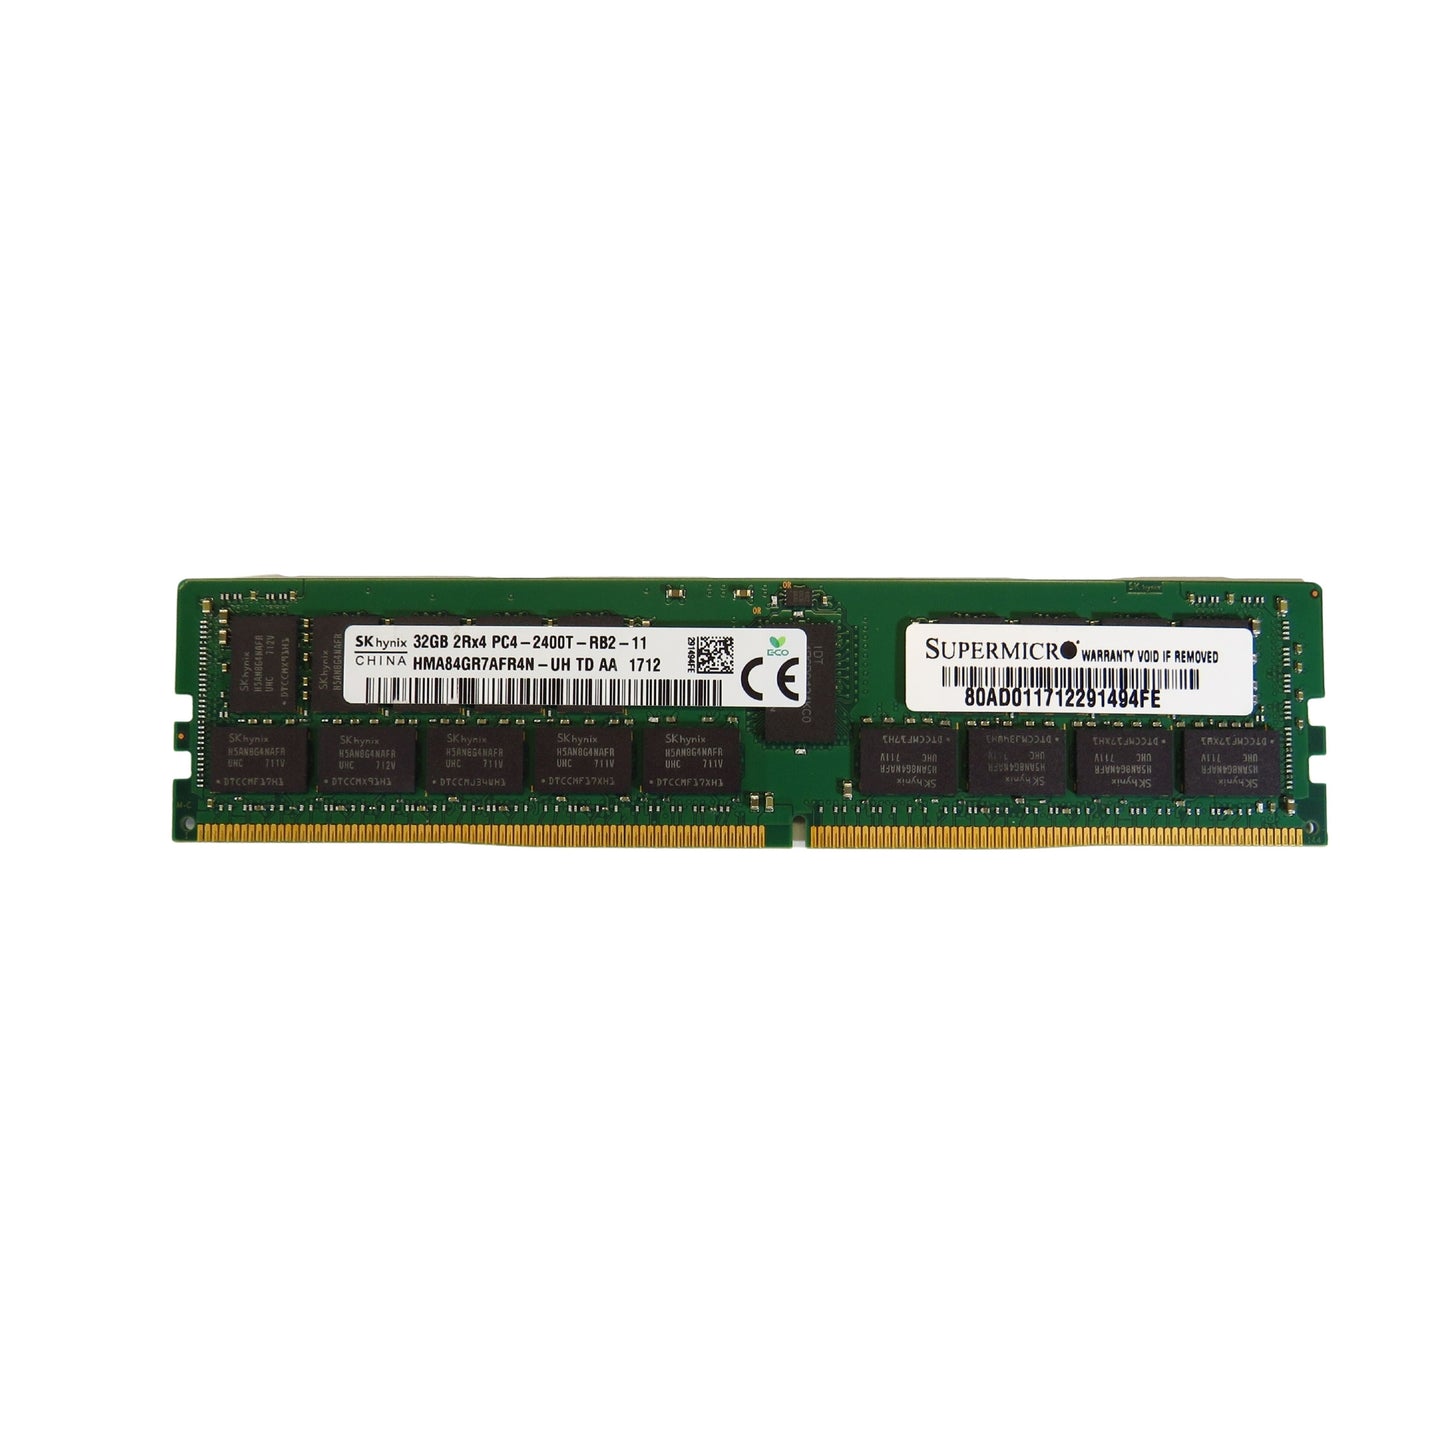 Supermicro MEM-DR432L-HL02-ER24 32GB 2Rx4 2400MHz DDR4 ECC Server Memory (Refurbished)